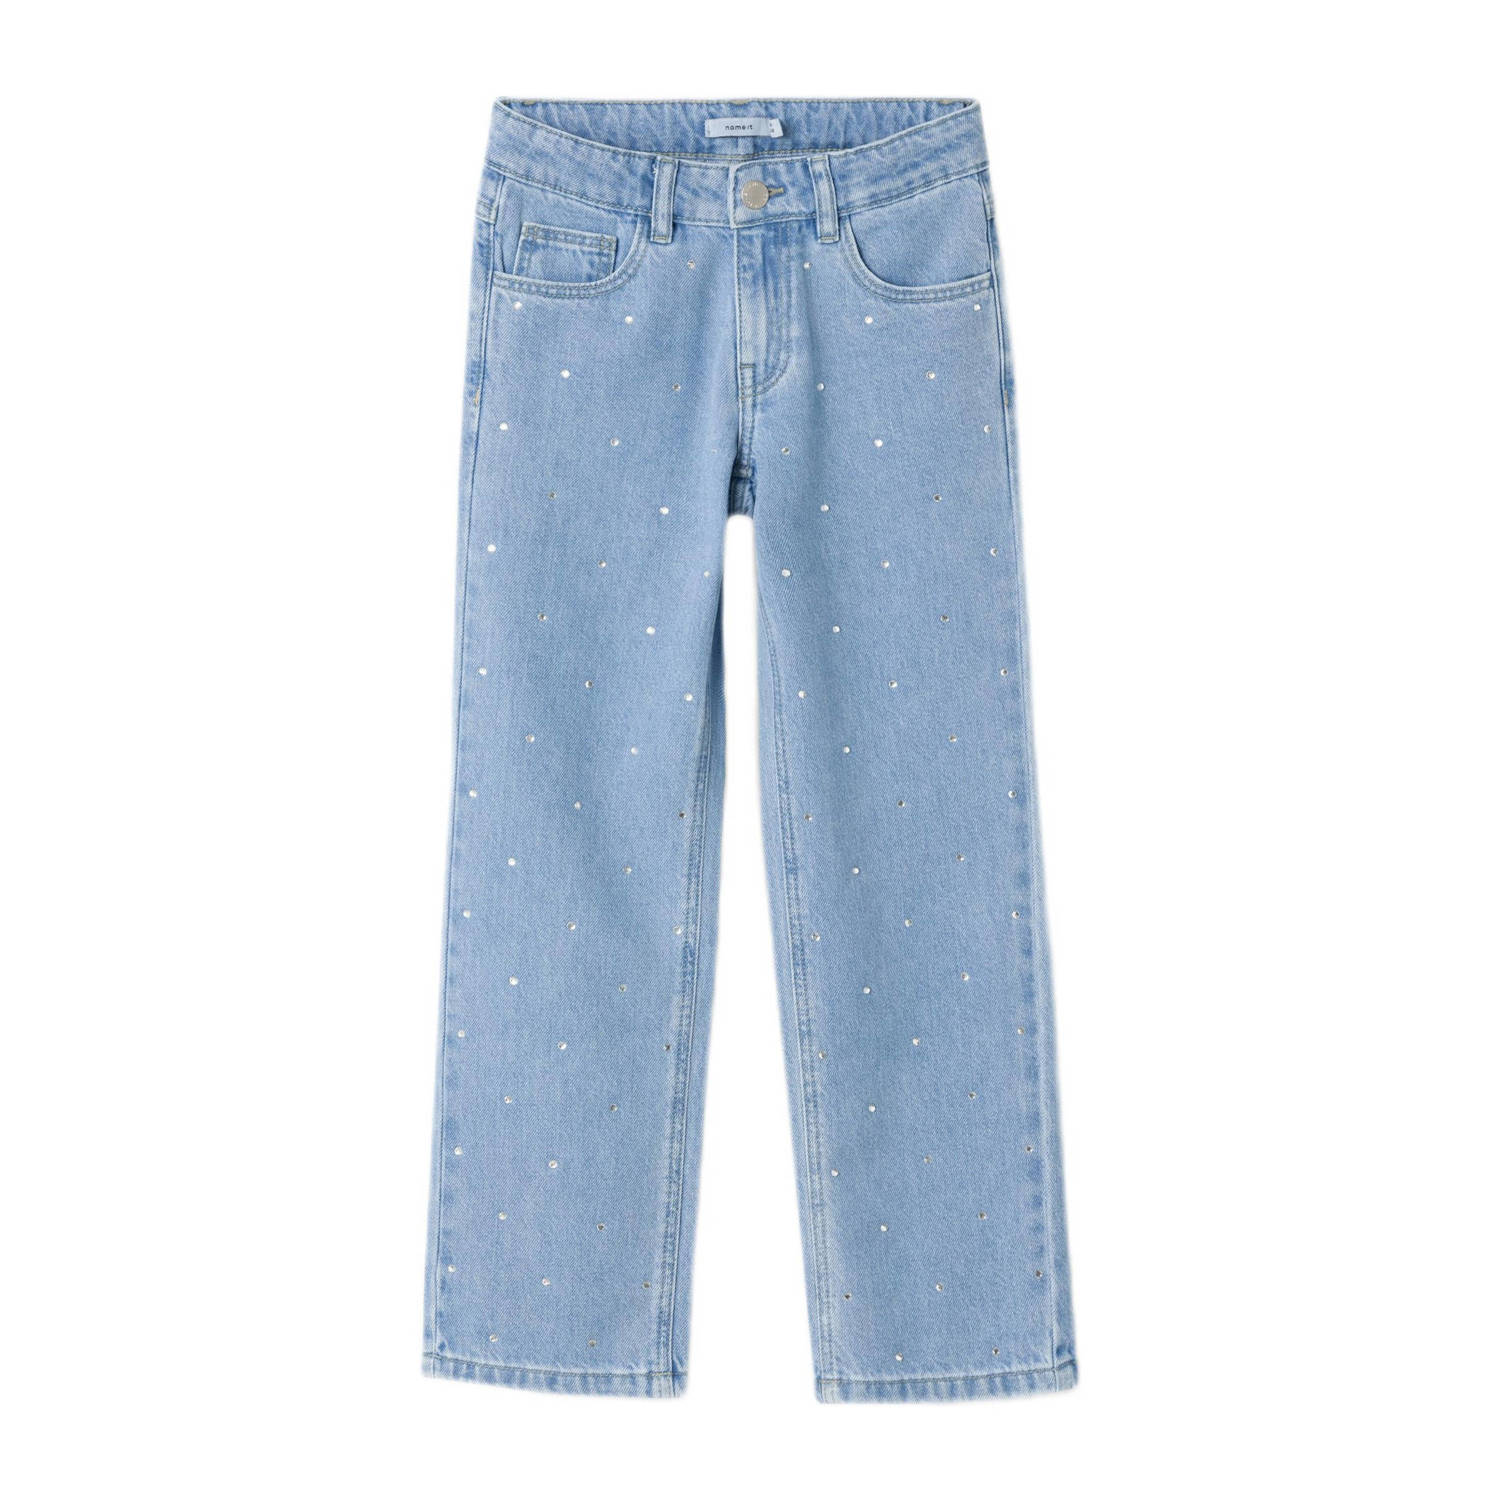 Name it KIDS loose fit jeans NKFROSE light blue denim Blauw Meisjes Katoen 116